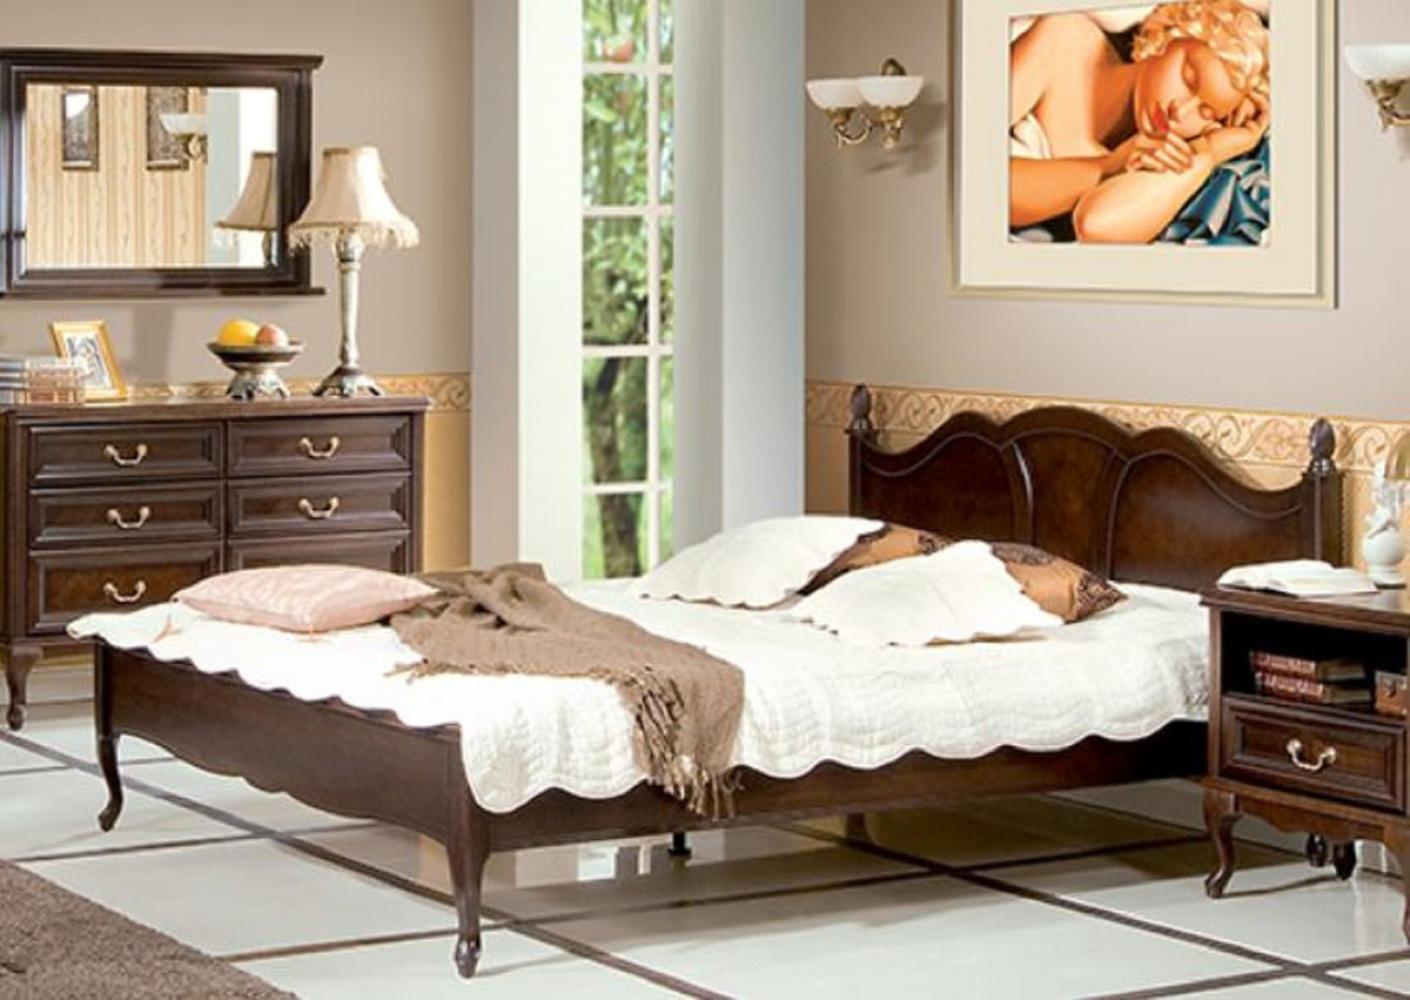 Casa Padrino Luxus Jugendstil Doppelbett Dunkelbraun 194 x 214,2 x H. 107,5 cm - Elegantes Massivholz Bett - Barock & Jugendstil Schlafzimmer Möbel Bild 1